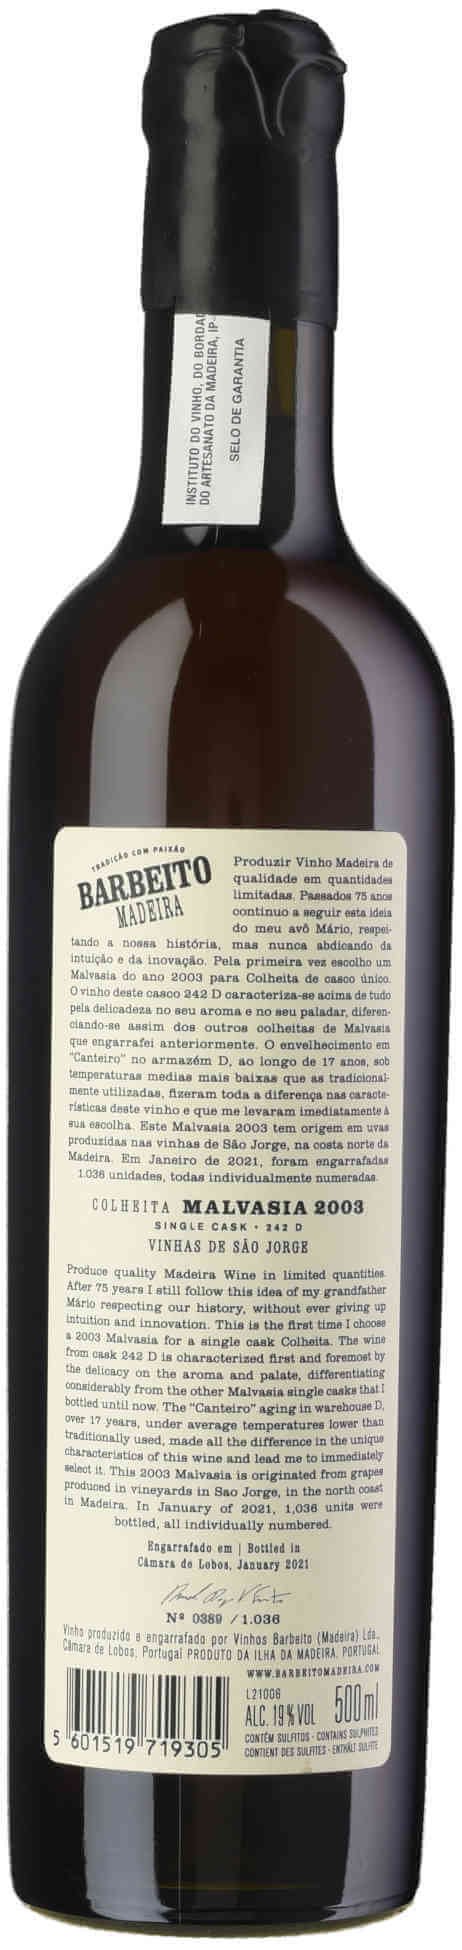 Barbeito-Malvasia-Colheita-2003-back